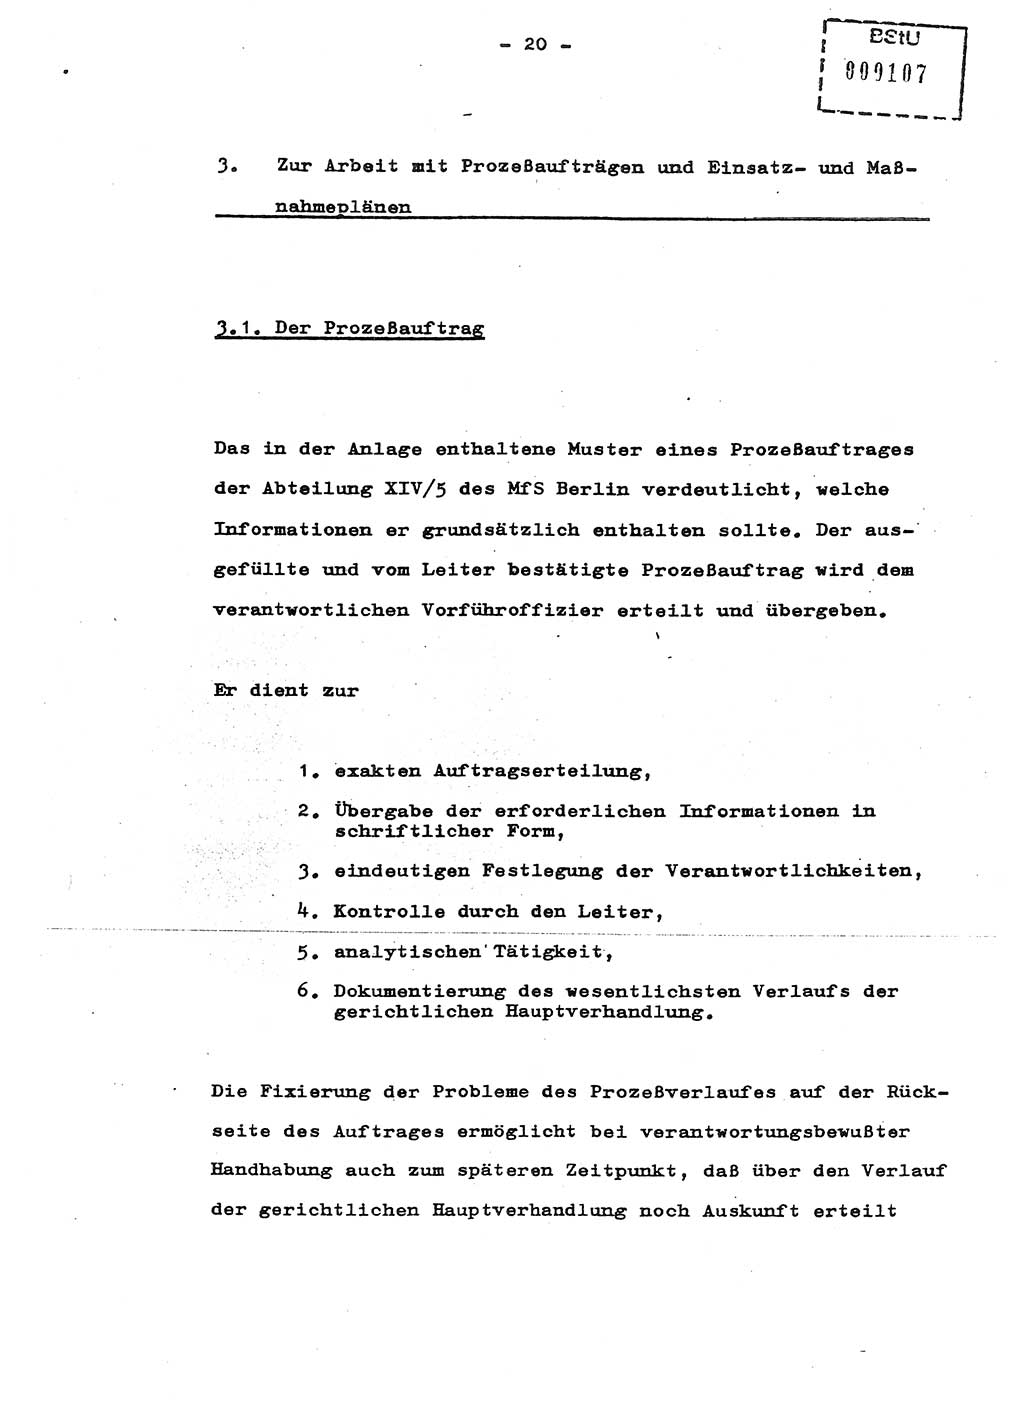 Schulungsmaterial Exemplar-Nr.: 8, Ministerium für Staatssicherheit [Deutsche Demokratische Republik (DDR)], Abteilung (Abt.) ⅩⅣ, Berlin 1987, Seite 20 (Sch.-Mat. Expl. 8 MfS DDR Abt. ⅩⅣ /87 1987, S. 20)